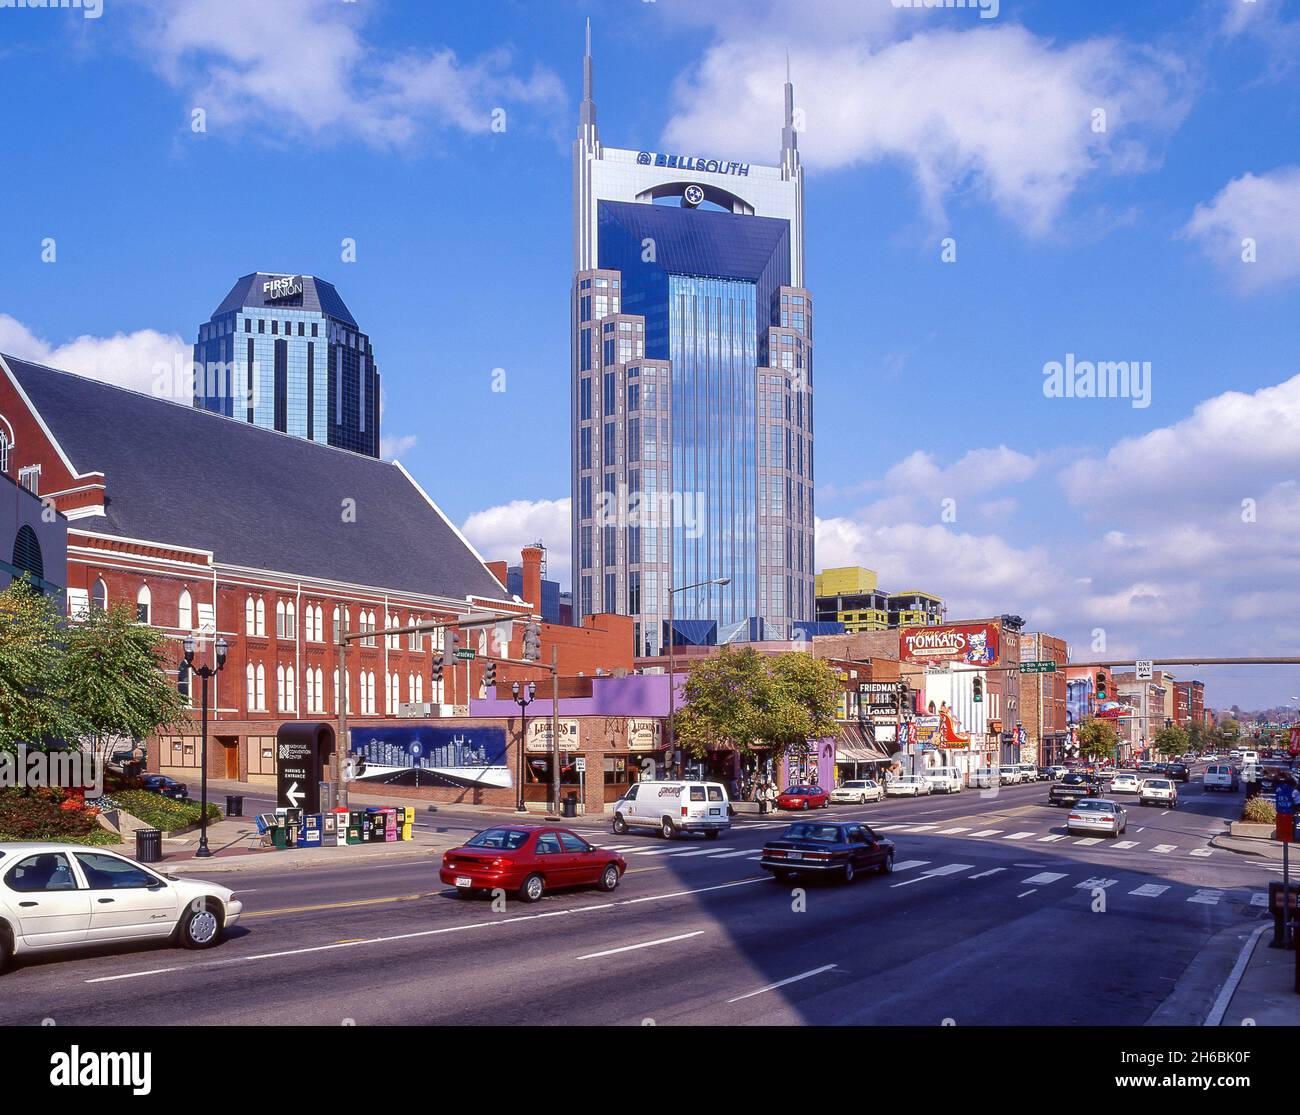 BellSouth Tower and bars, Broadway, Nashville, Tennessee, États-Unis d'Amérique Banque D'Images